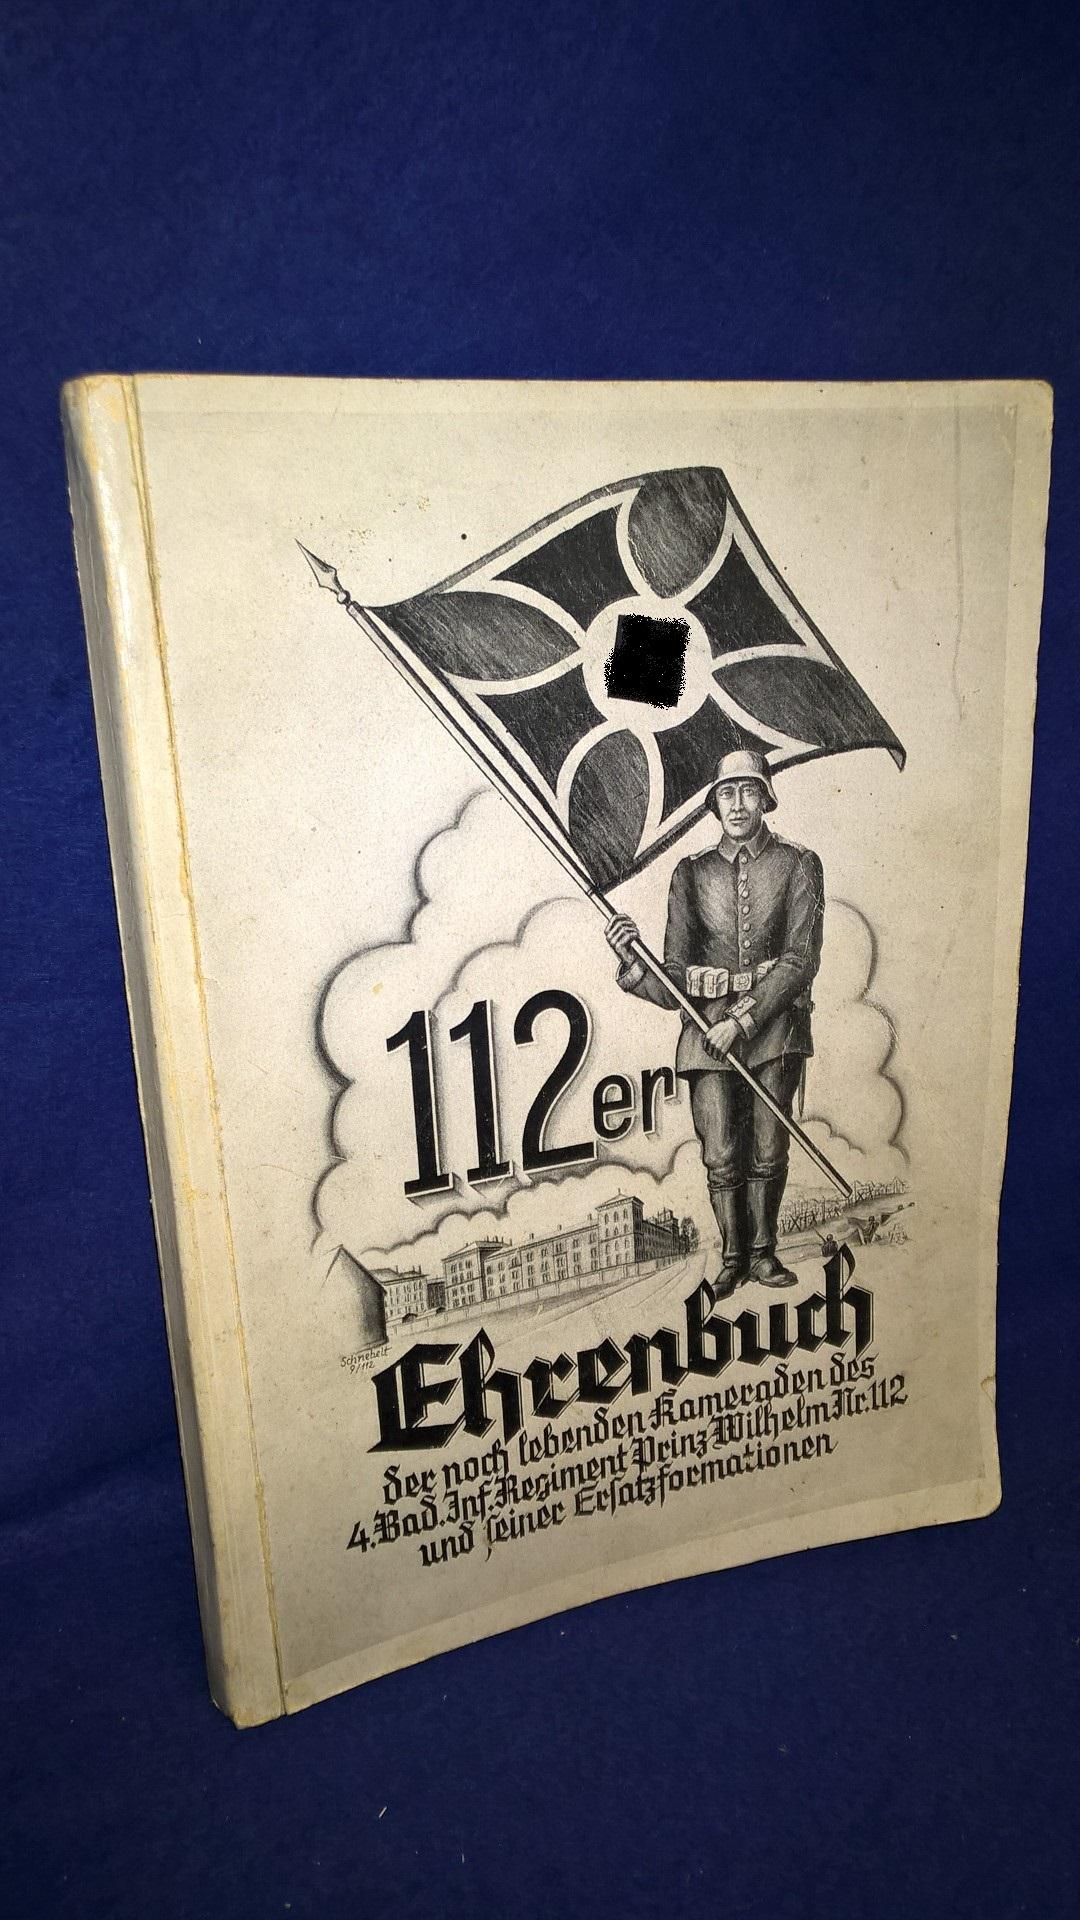 Ehrenbuch der noch lebenden Kameraden des 4. Bad. Inf. Regiment Prinz Wilhelm Nr. 112 und seiner Ersatzformationen.